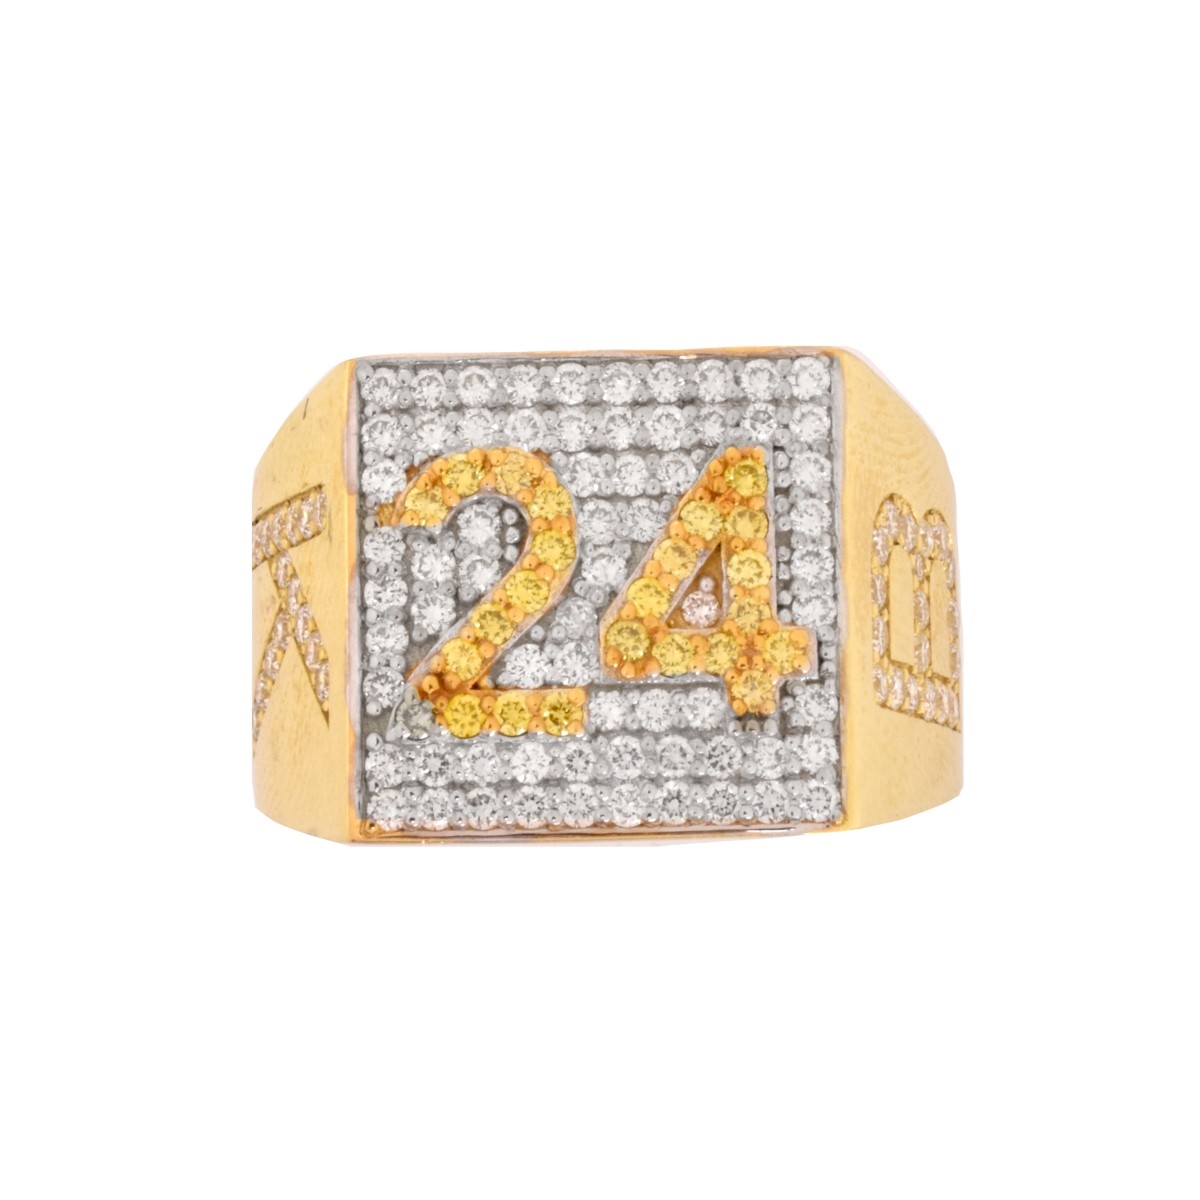 "Kobi Bryant 24" Diamond and 18K Ring